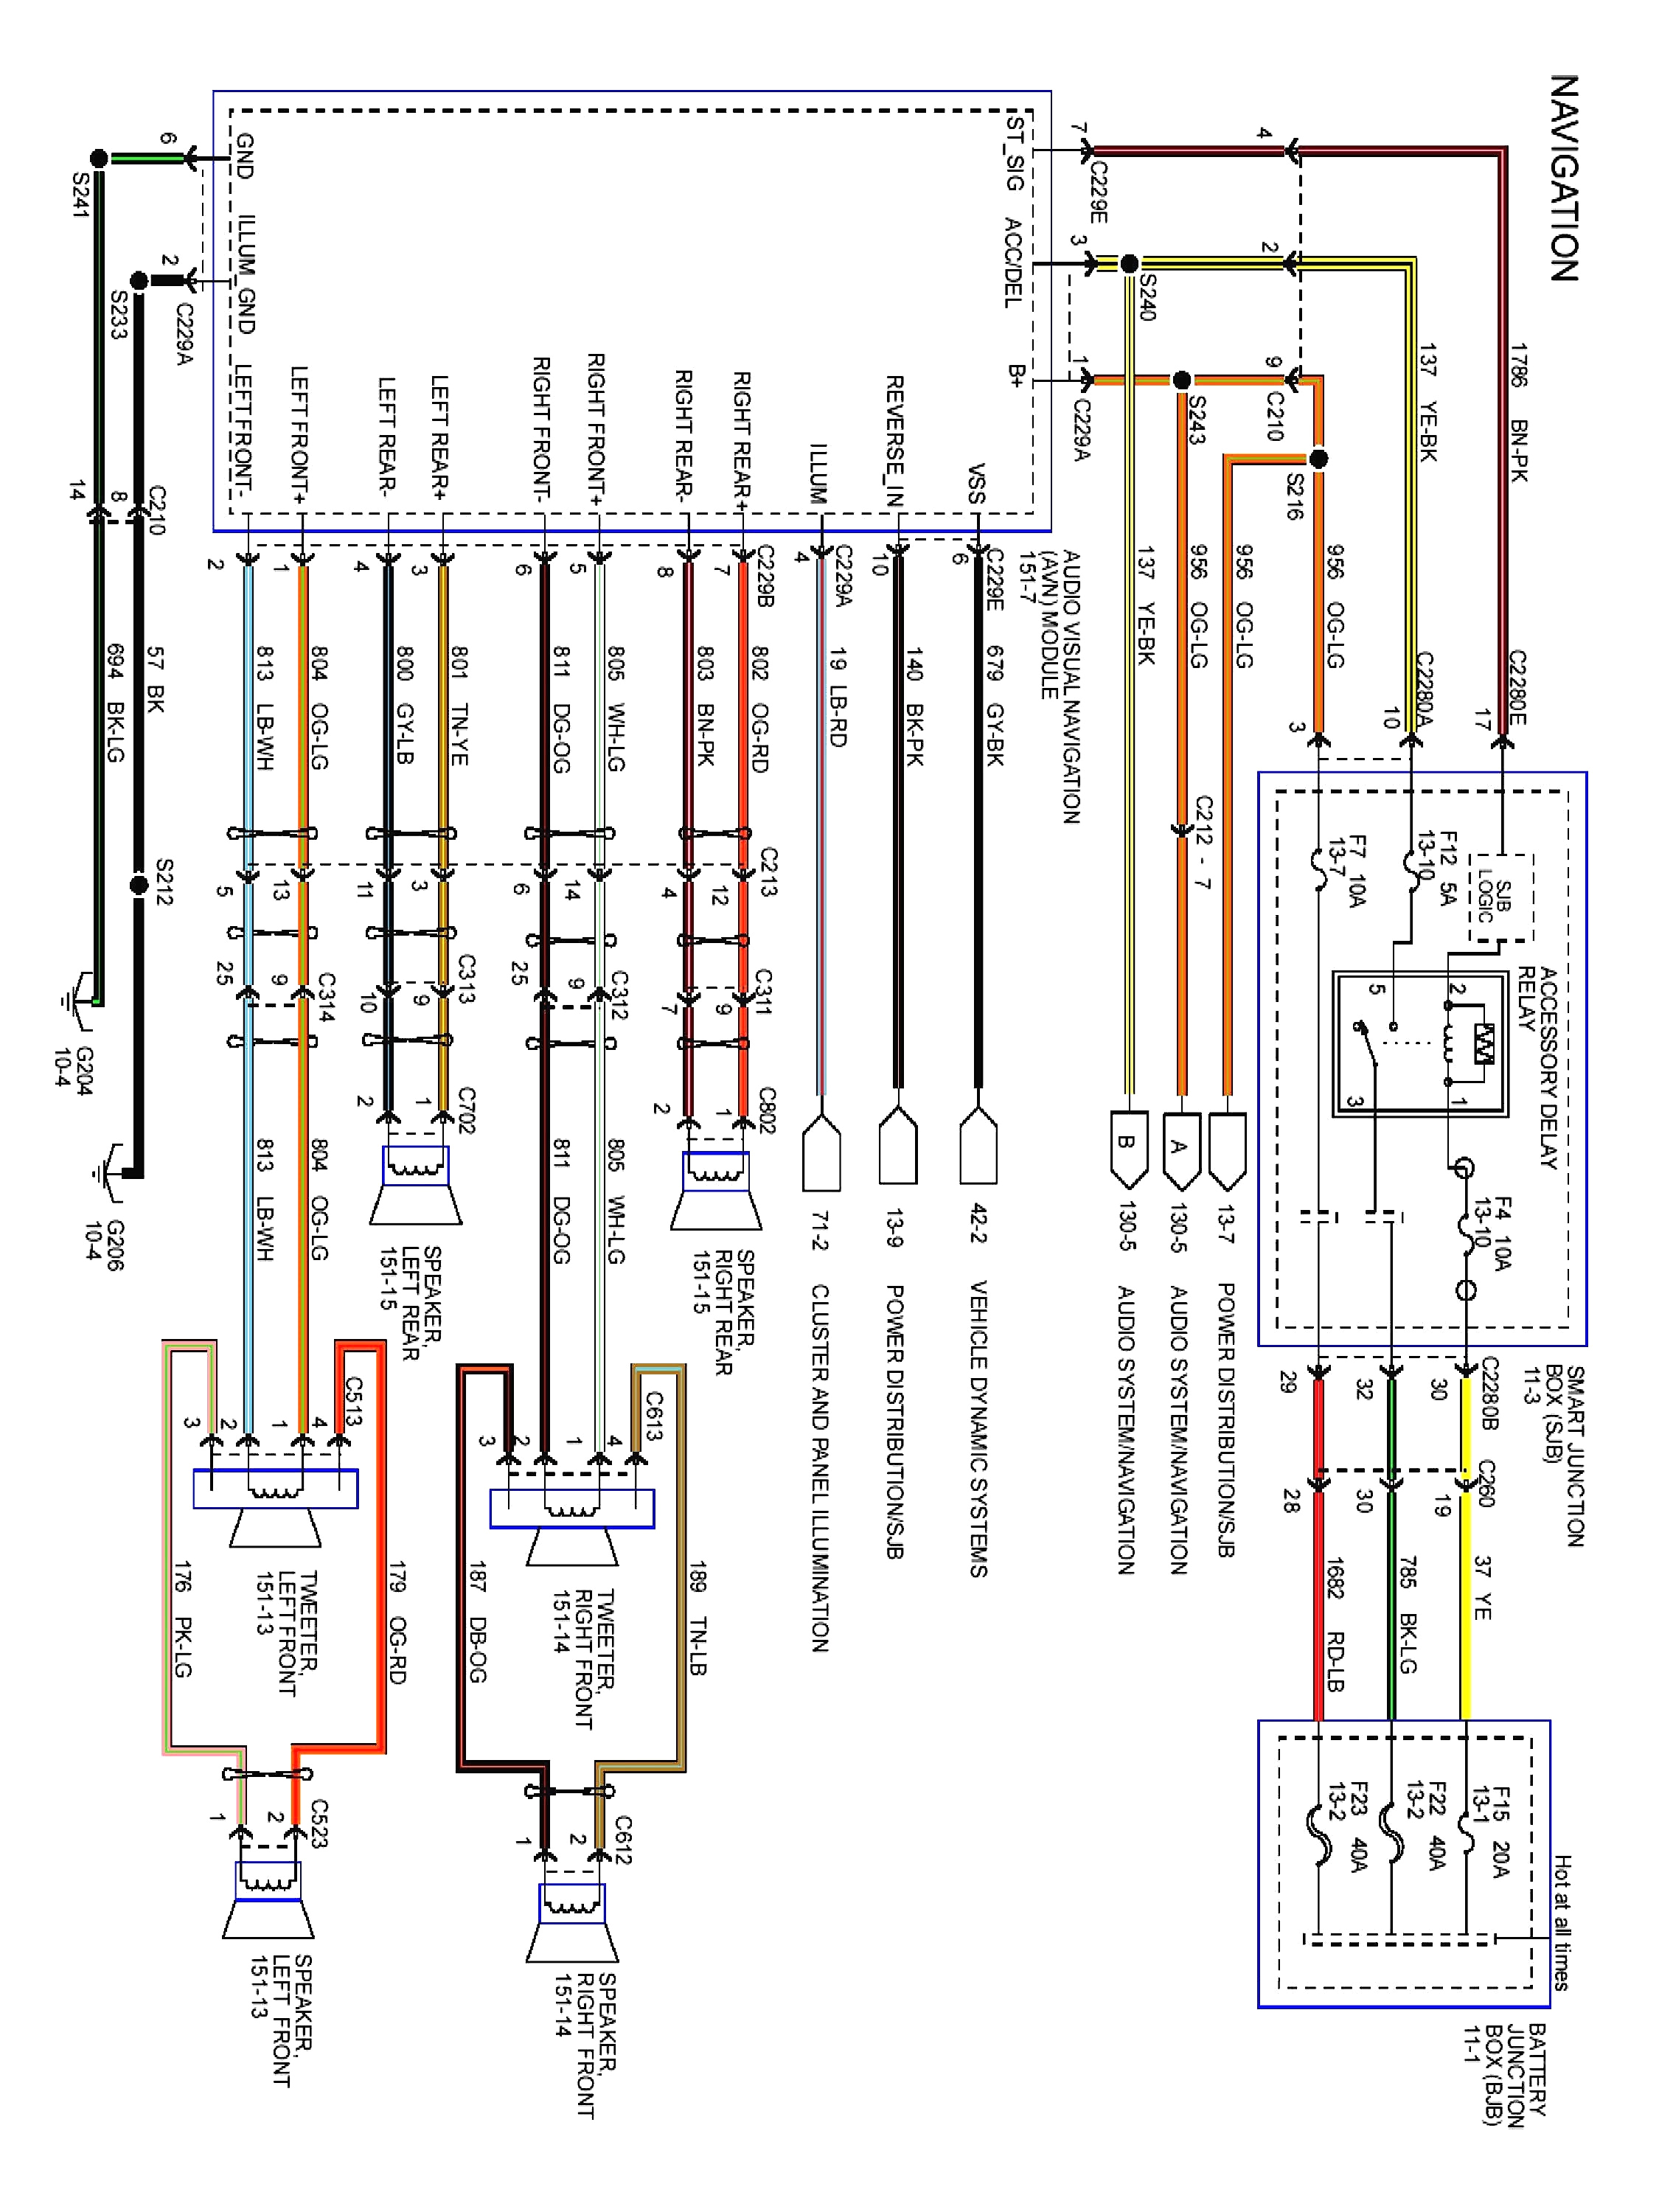 ford van alternator wiring wiring diagram expert ford focus alternator wiring moreover ford transit as well